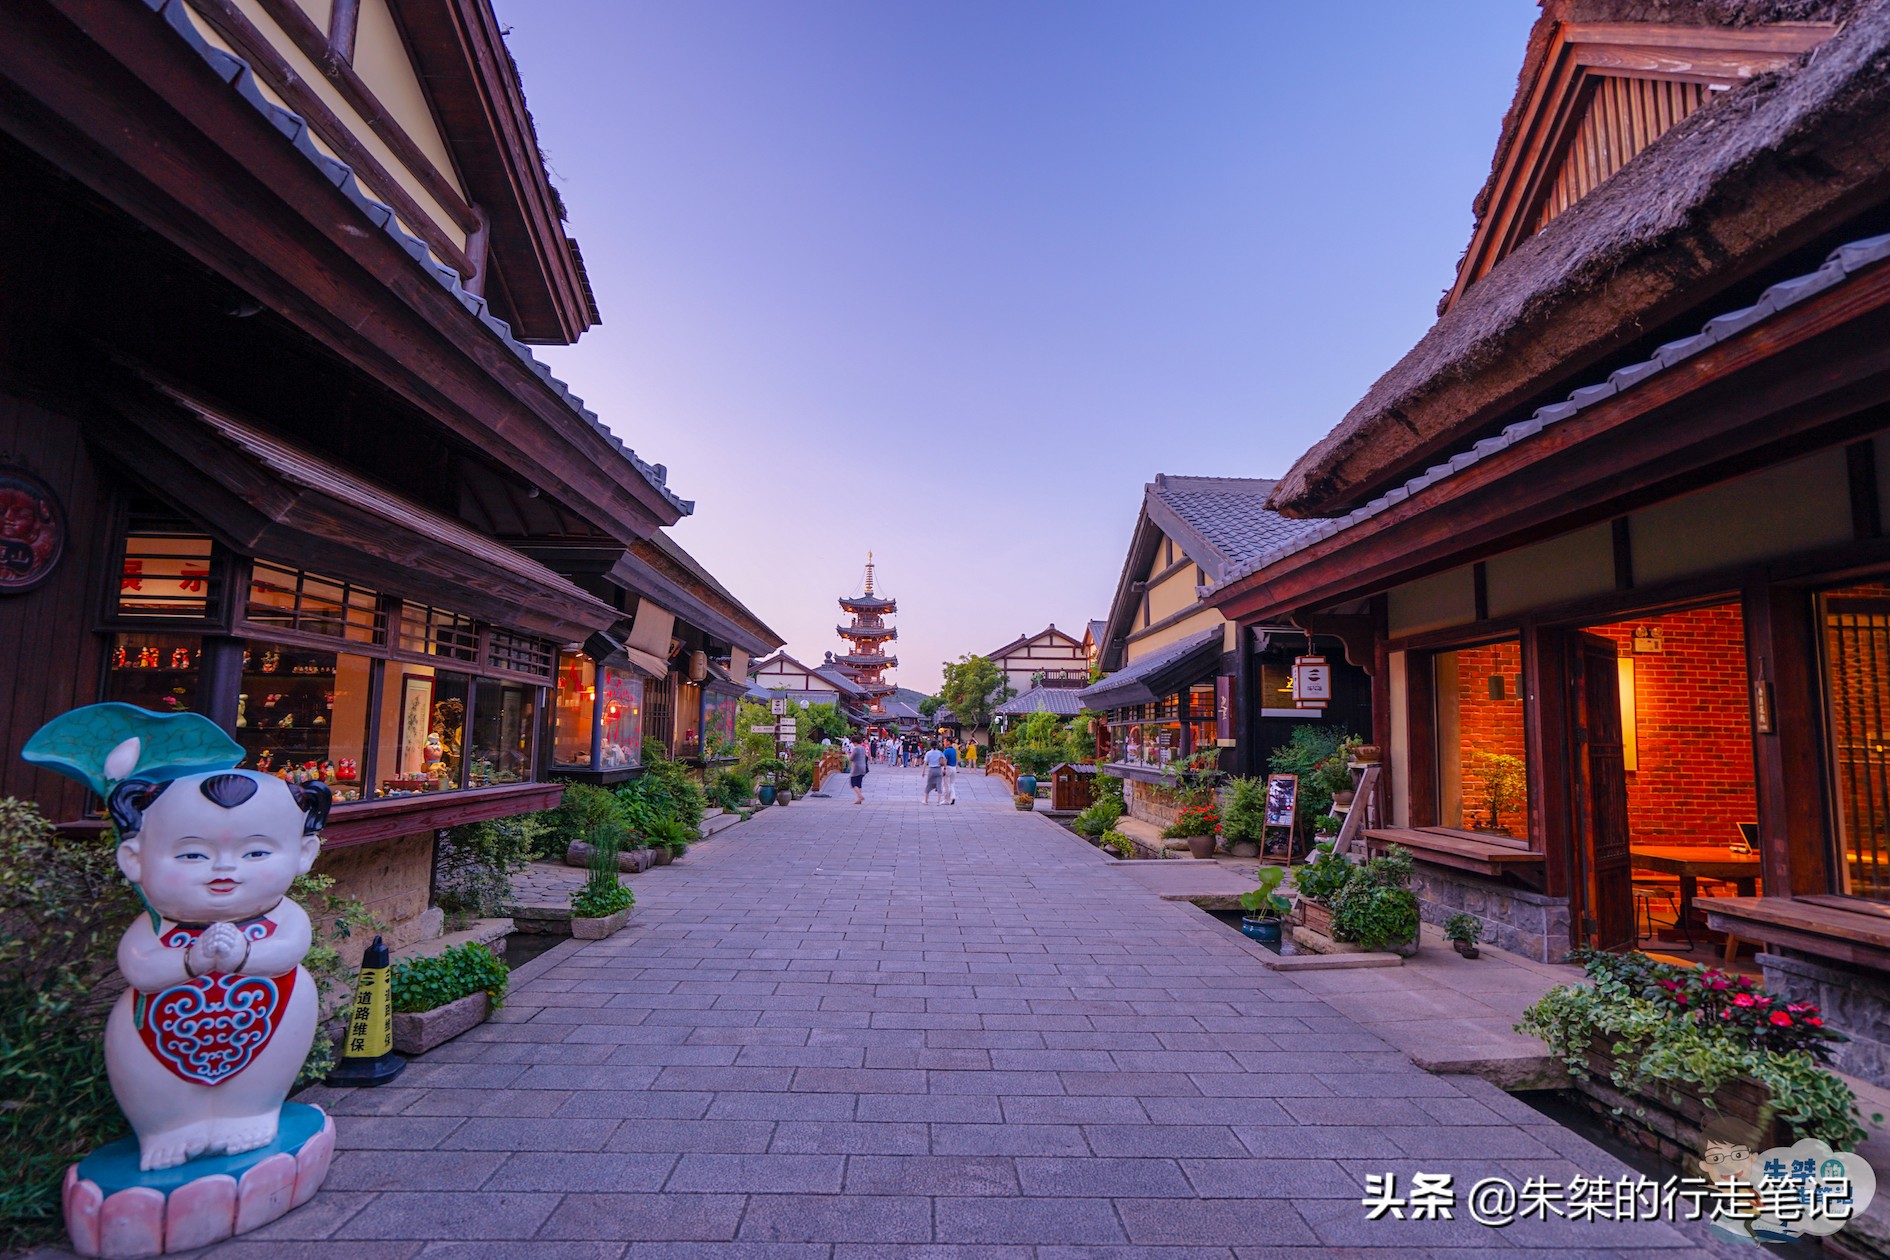 中国最美的禅意小镇，从内到外都透露着满满的佛系之感，让人心静